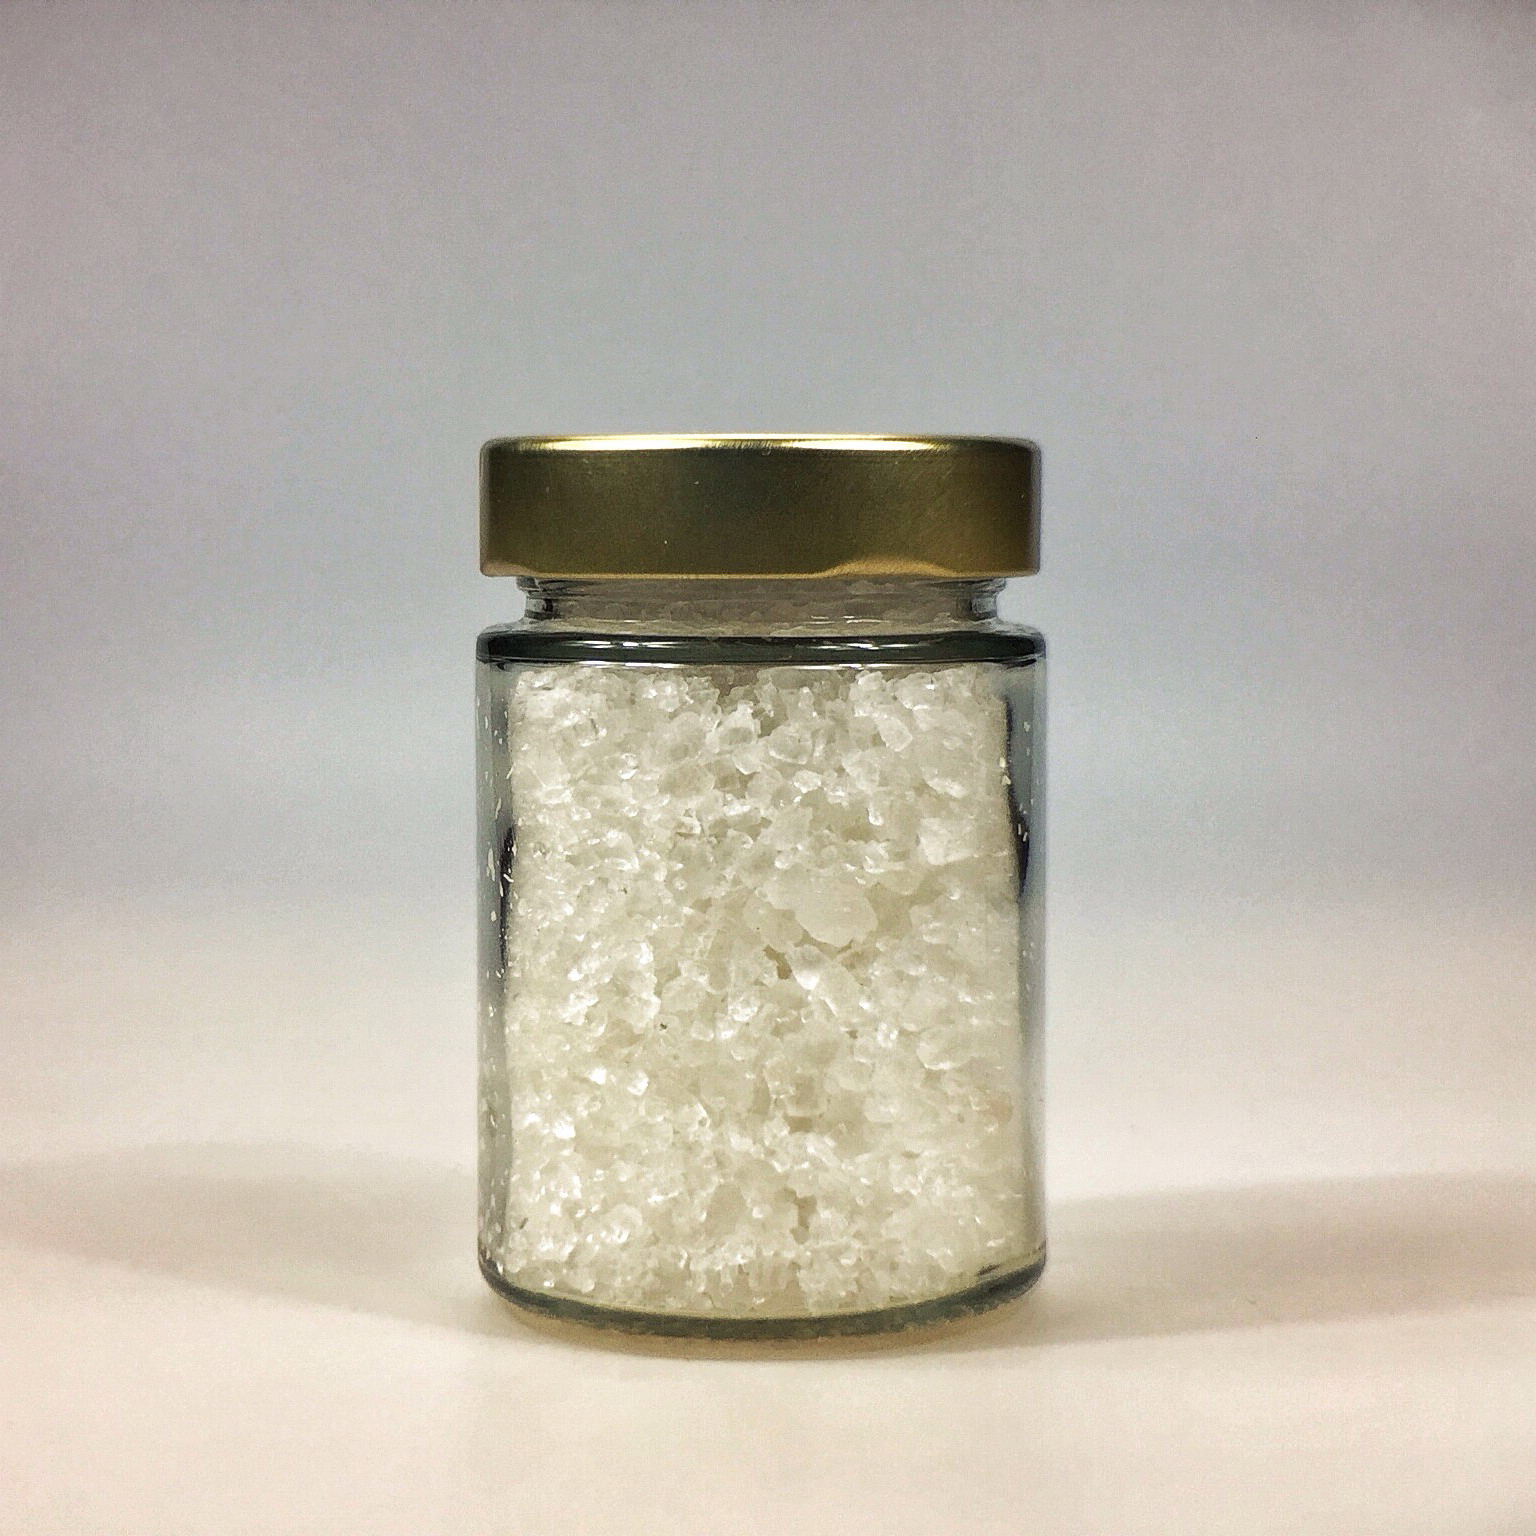 Halit Salz grob gemahlen für Salzmühle im kleinen Glas mit Golddeckel